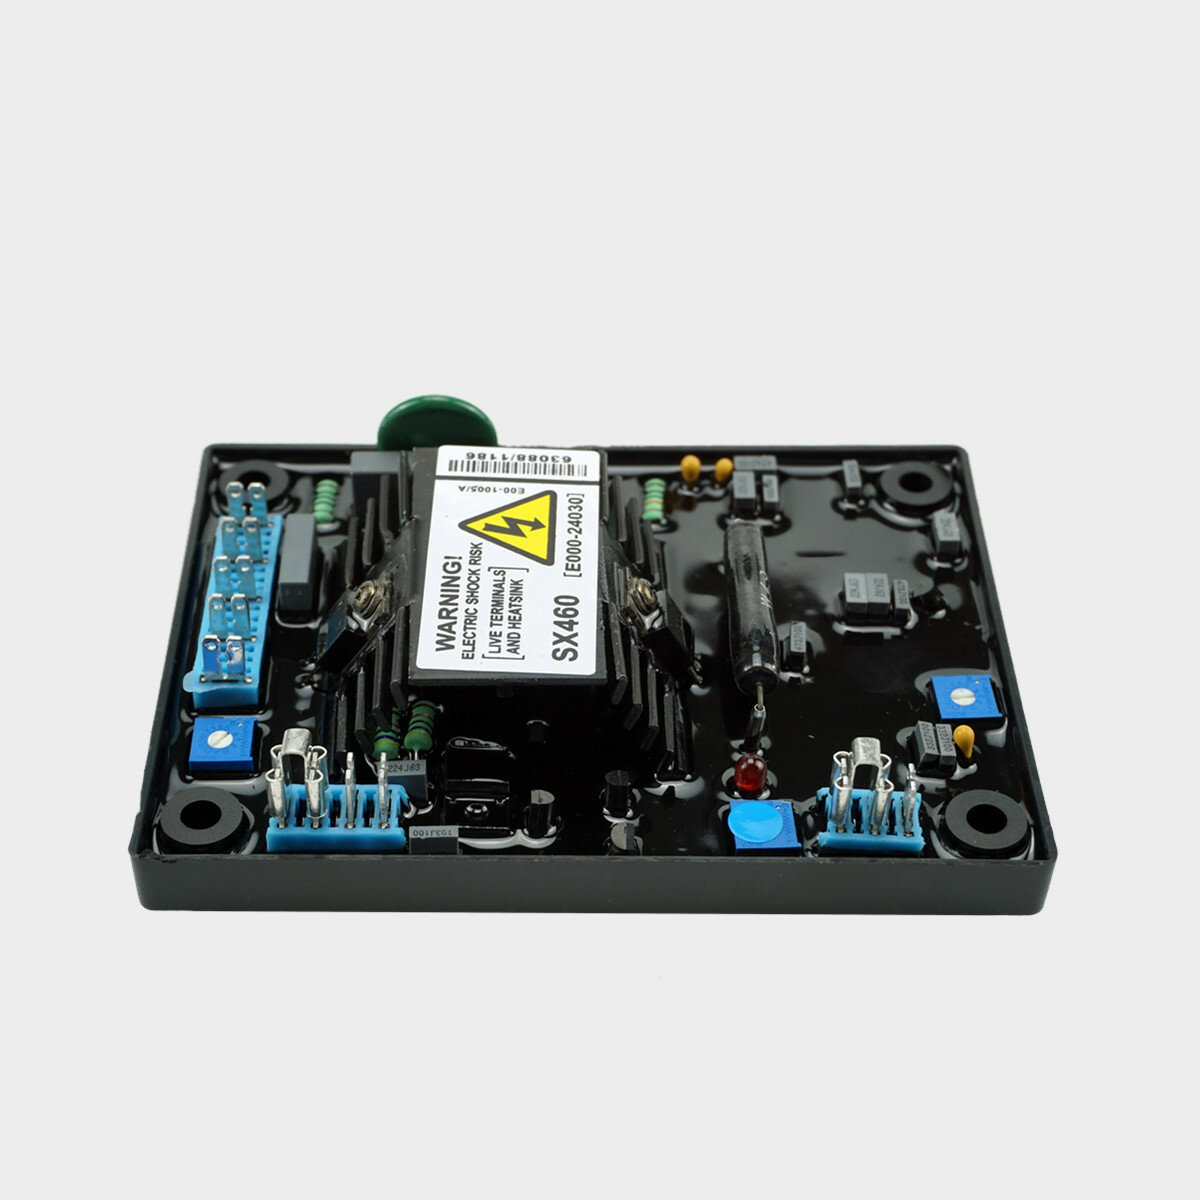 AVR SX460 automatische spannings-voltregelaar vervanging voor generator